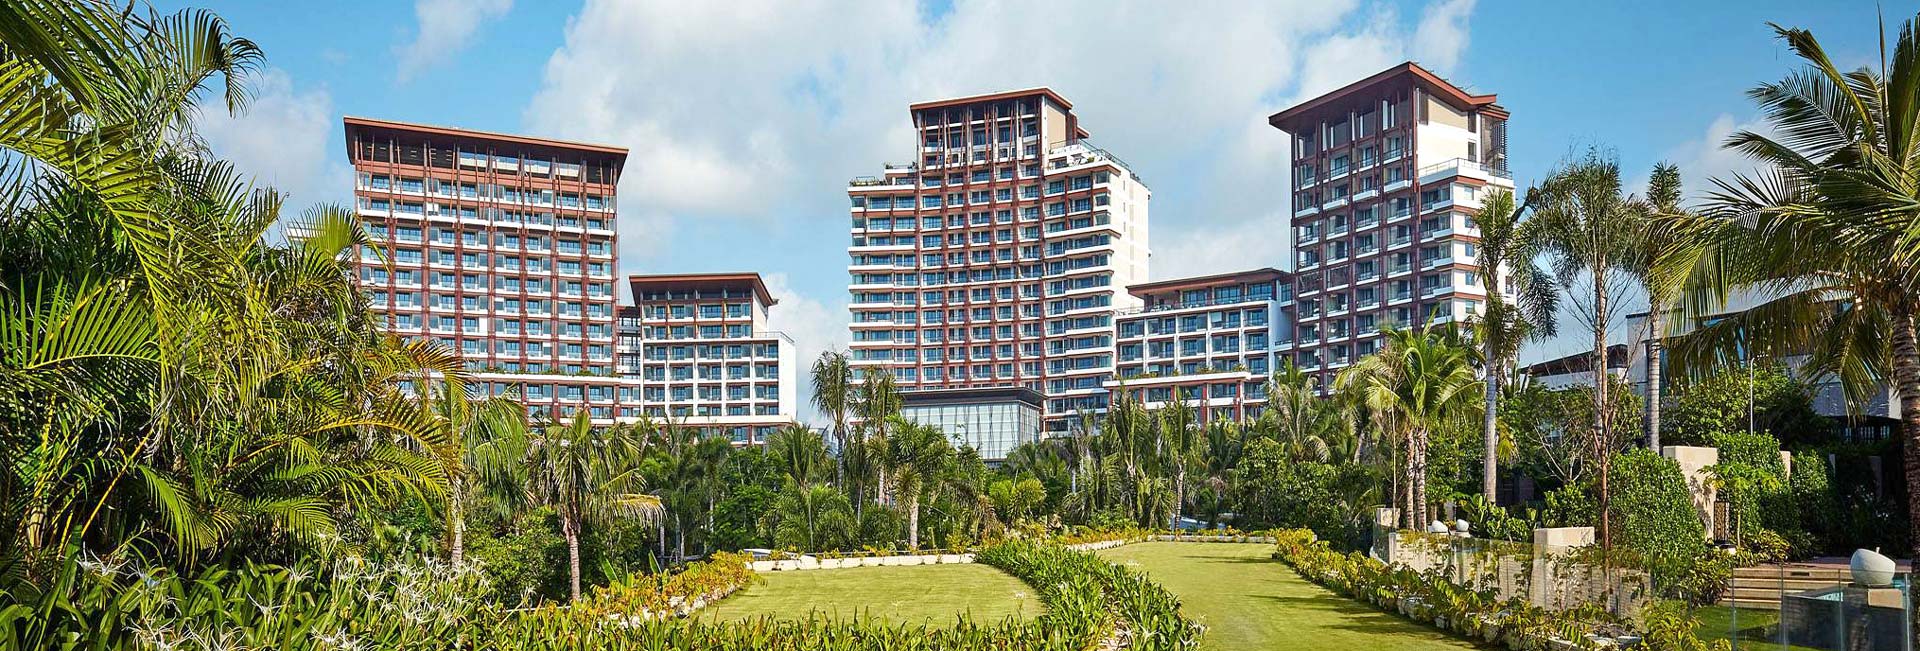 Grand Hyatt Sanya Haitang Bay Resort & Spa